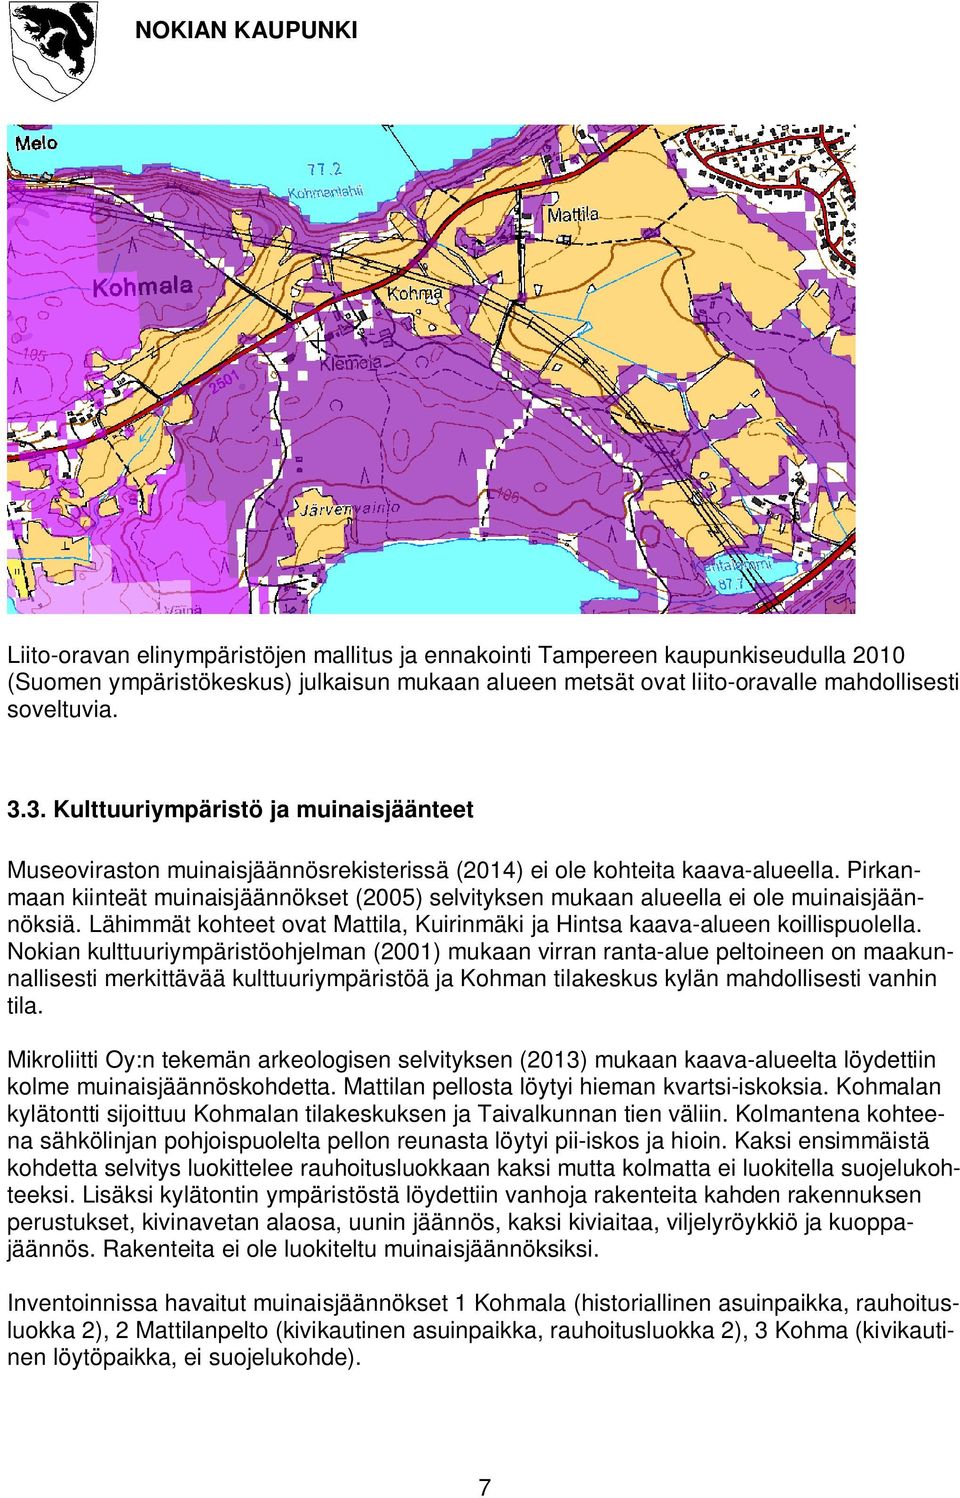 Pirkanmaan kiinteät muinaisjäännökset (2005) selvityksen mukaan alueella ei ole muinaisjäännöksiä. Lähimmät kohteet ovat Mattila, Kuirinmäki ja Hintsa kaava-alueen koillispuolella.